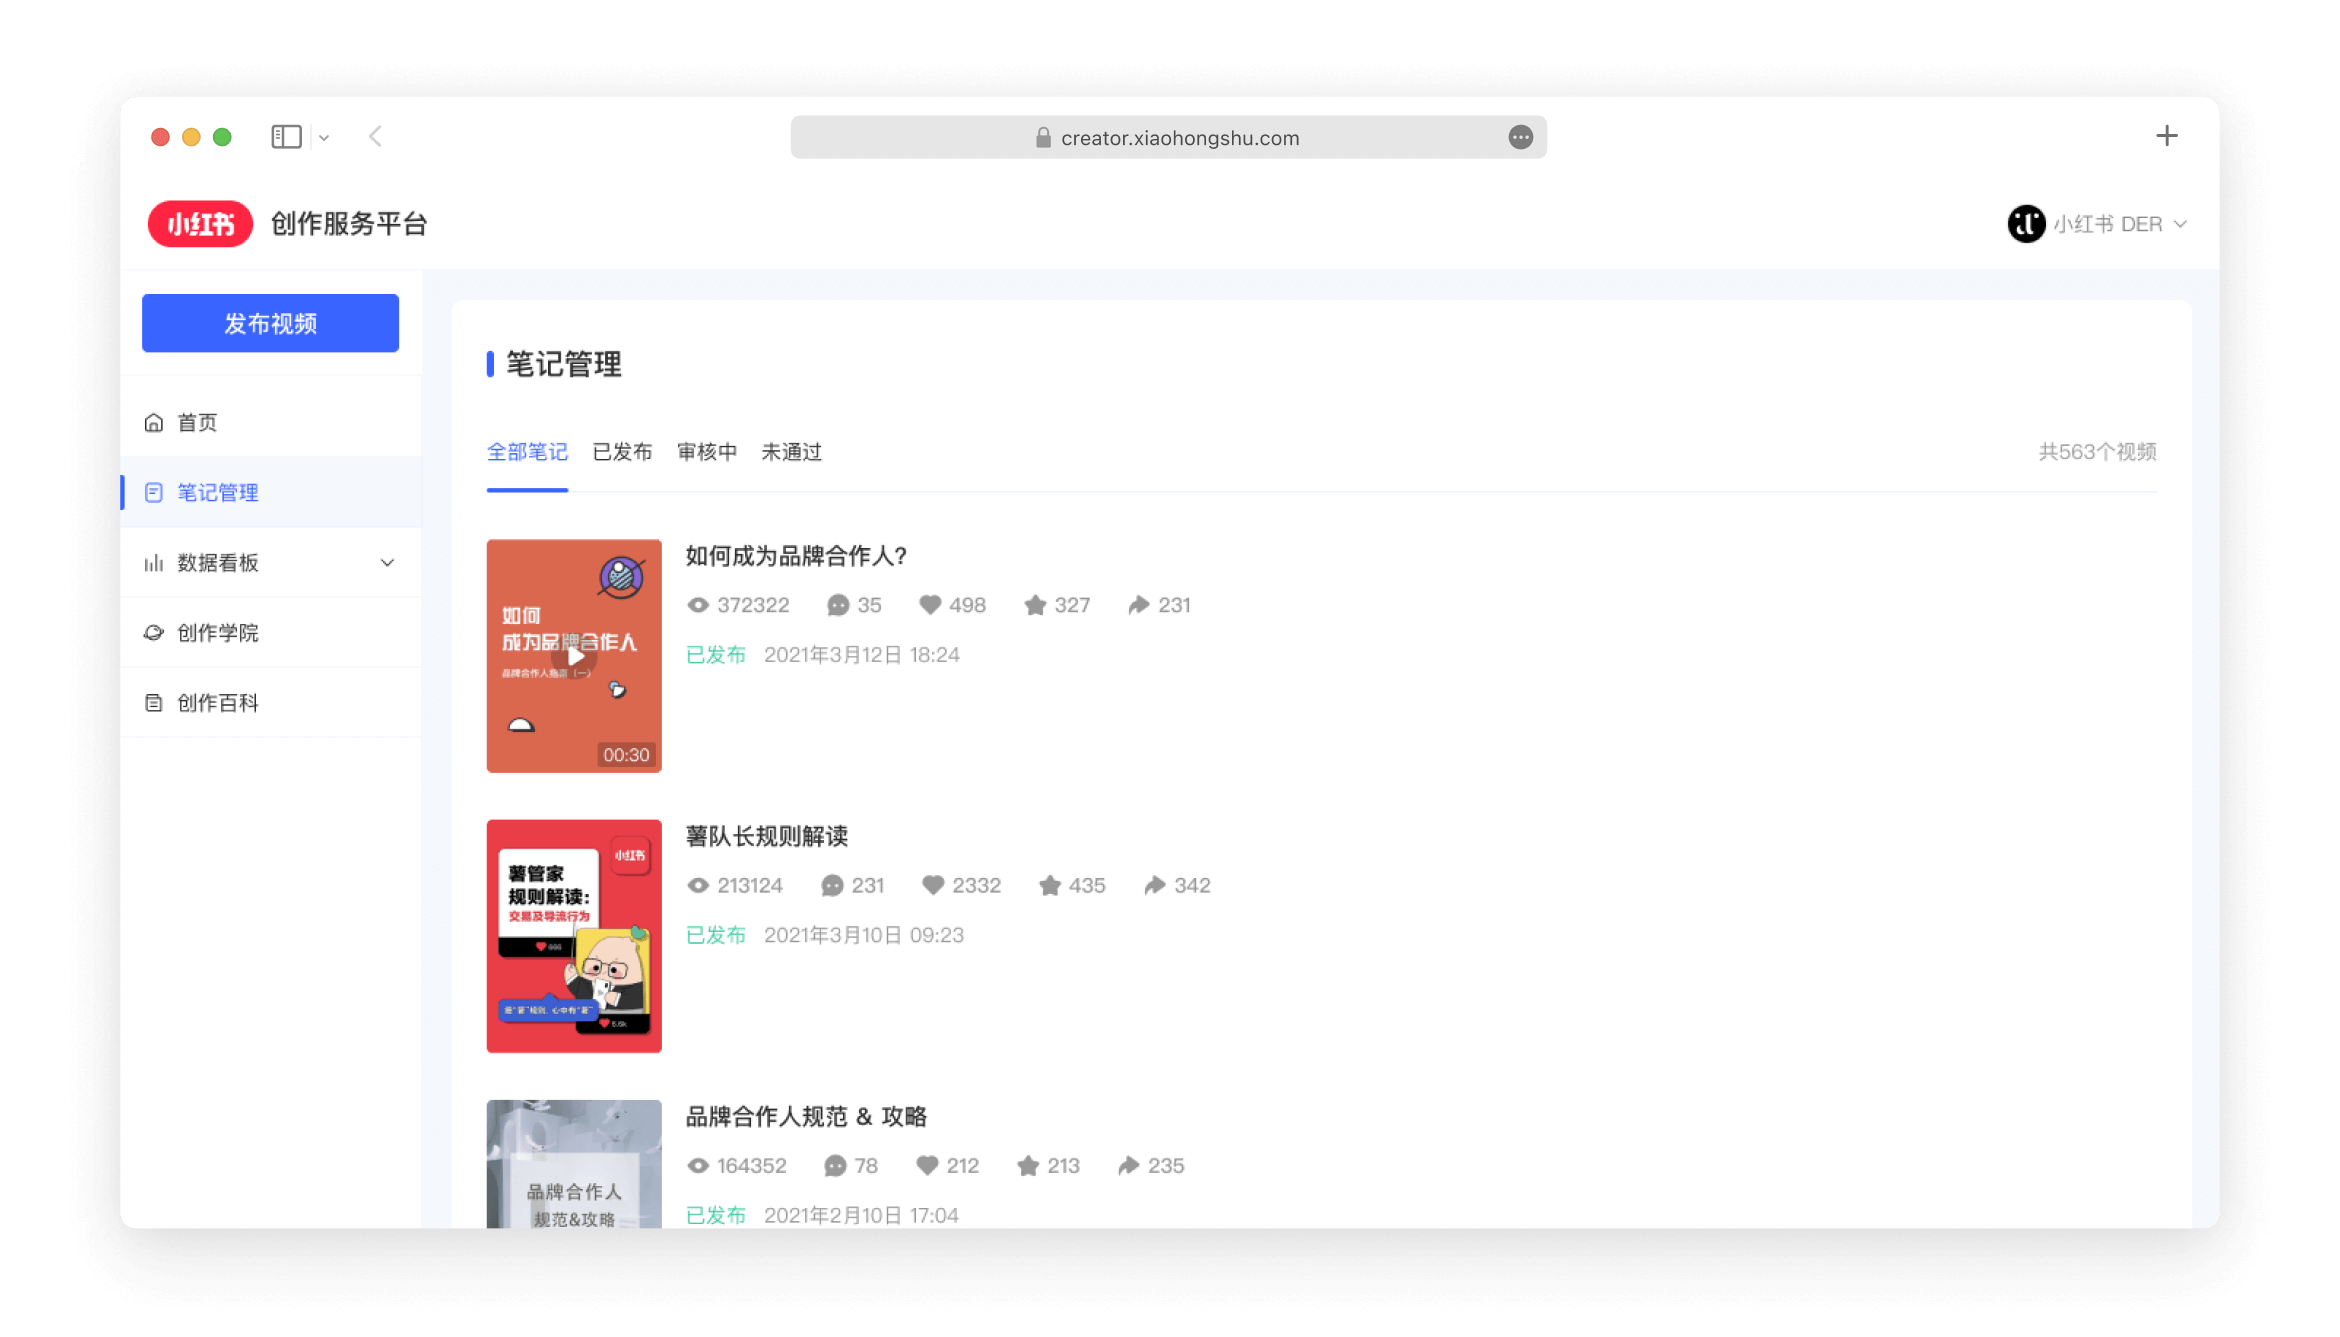 AsiaPac_Xiaohongshu-Creators-platform.png